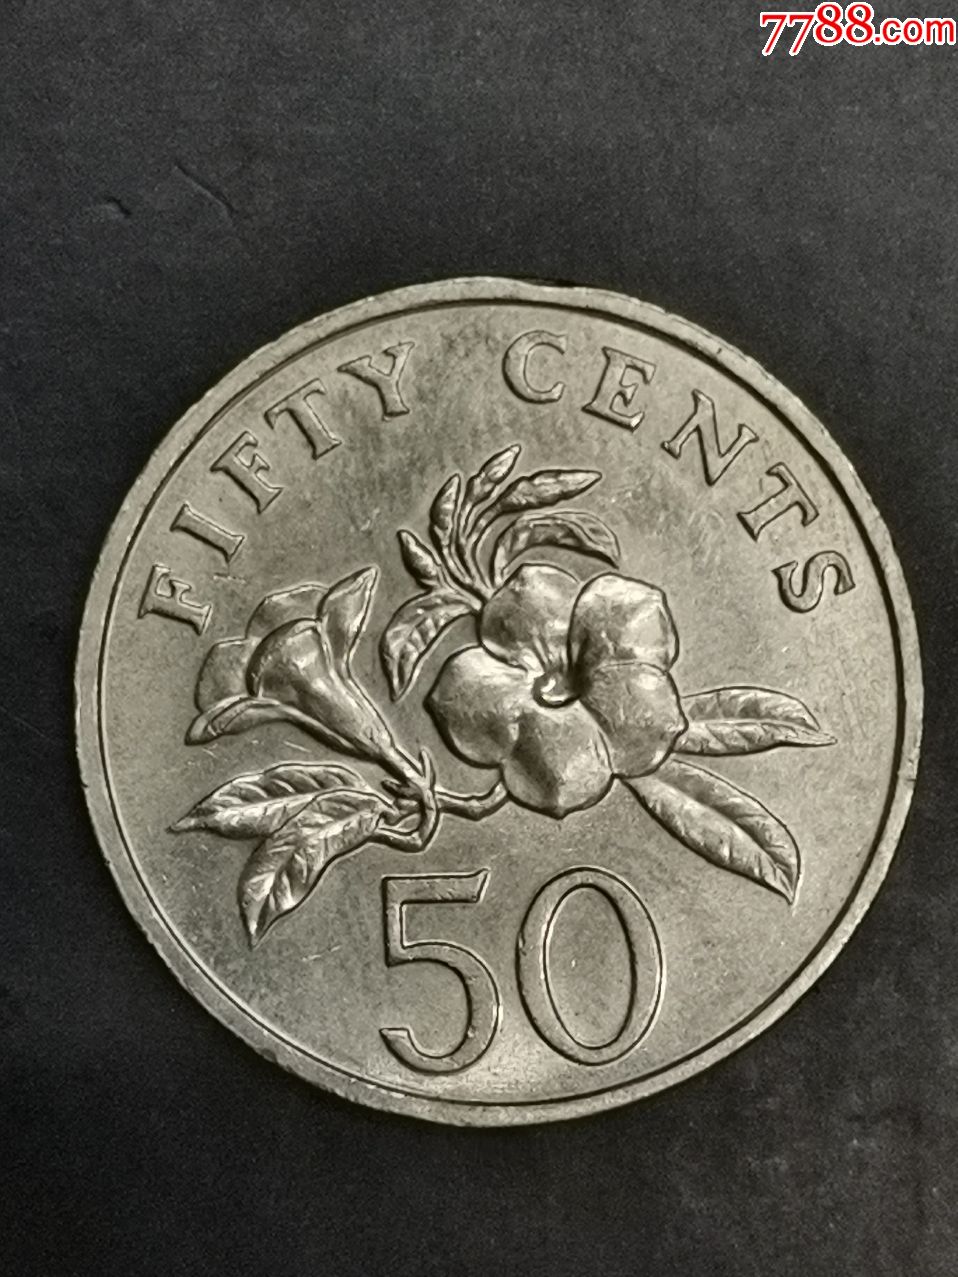 新加坡1991年50分硬币